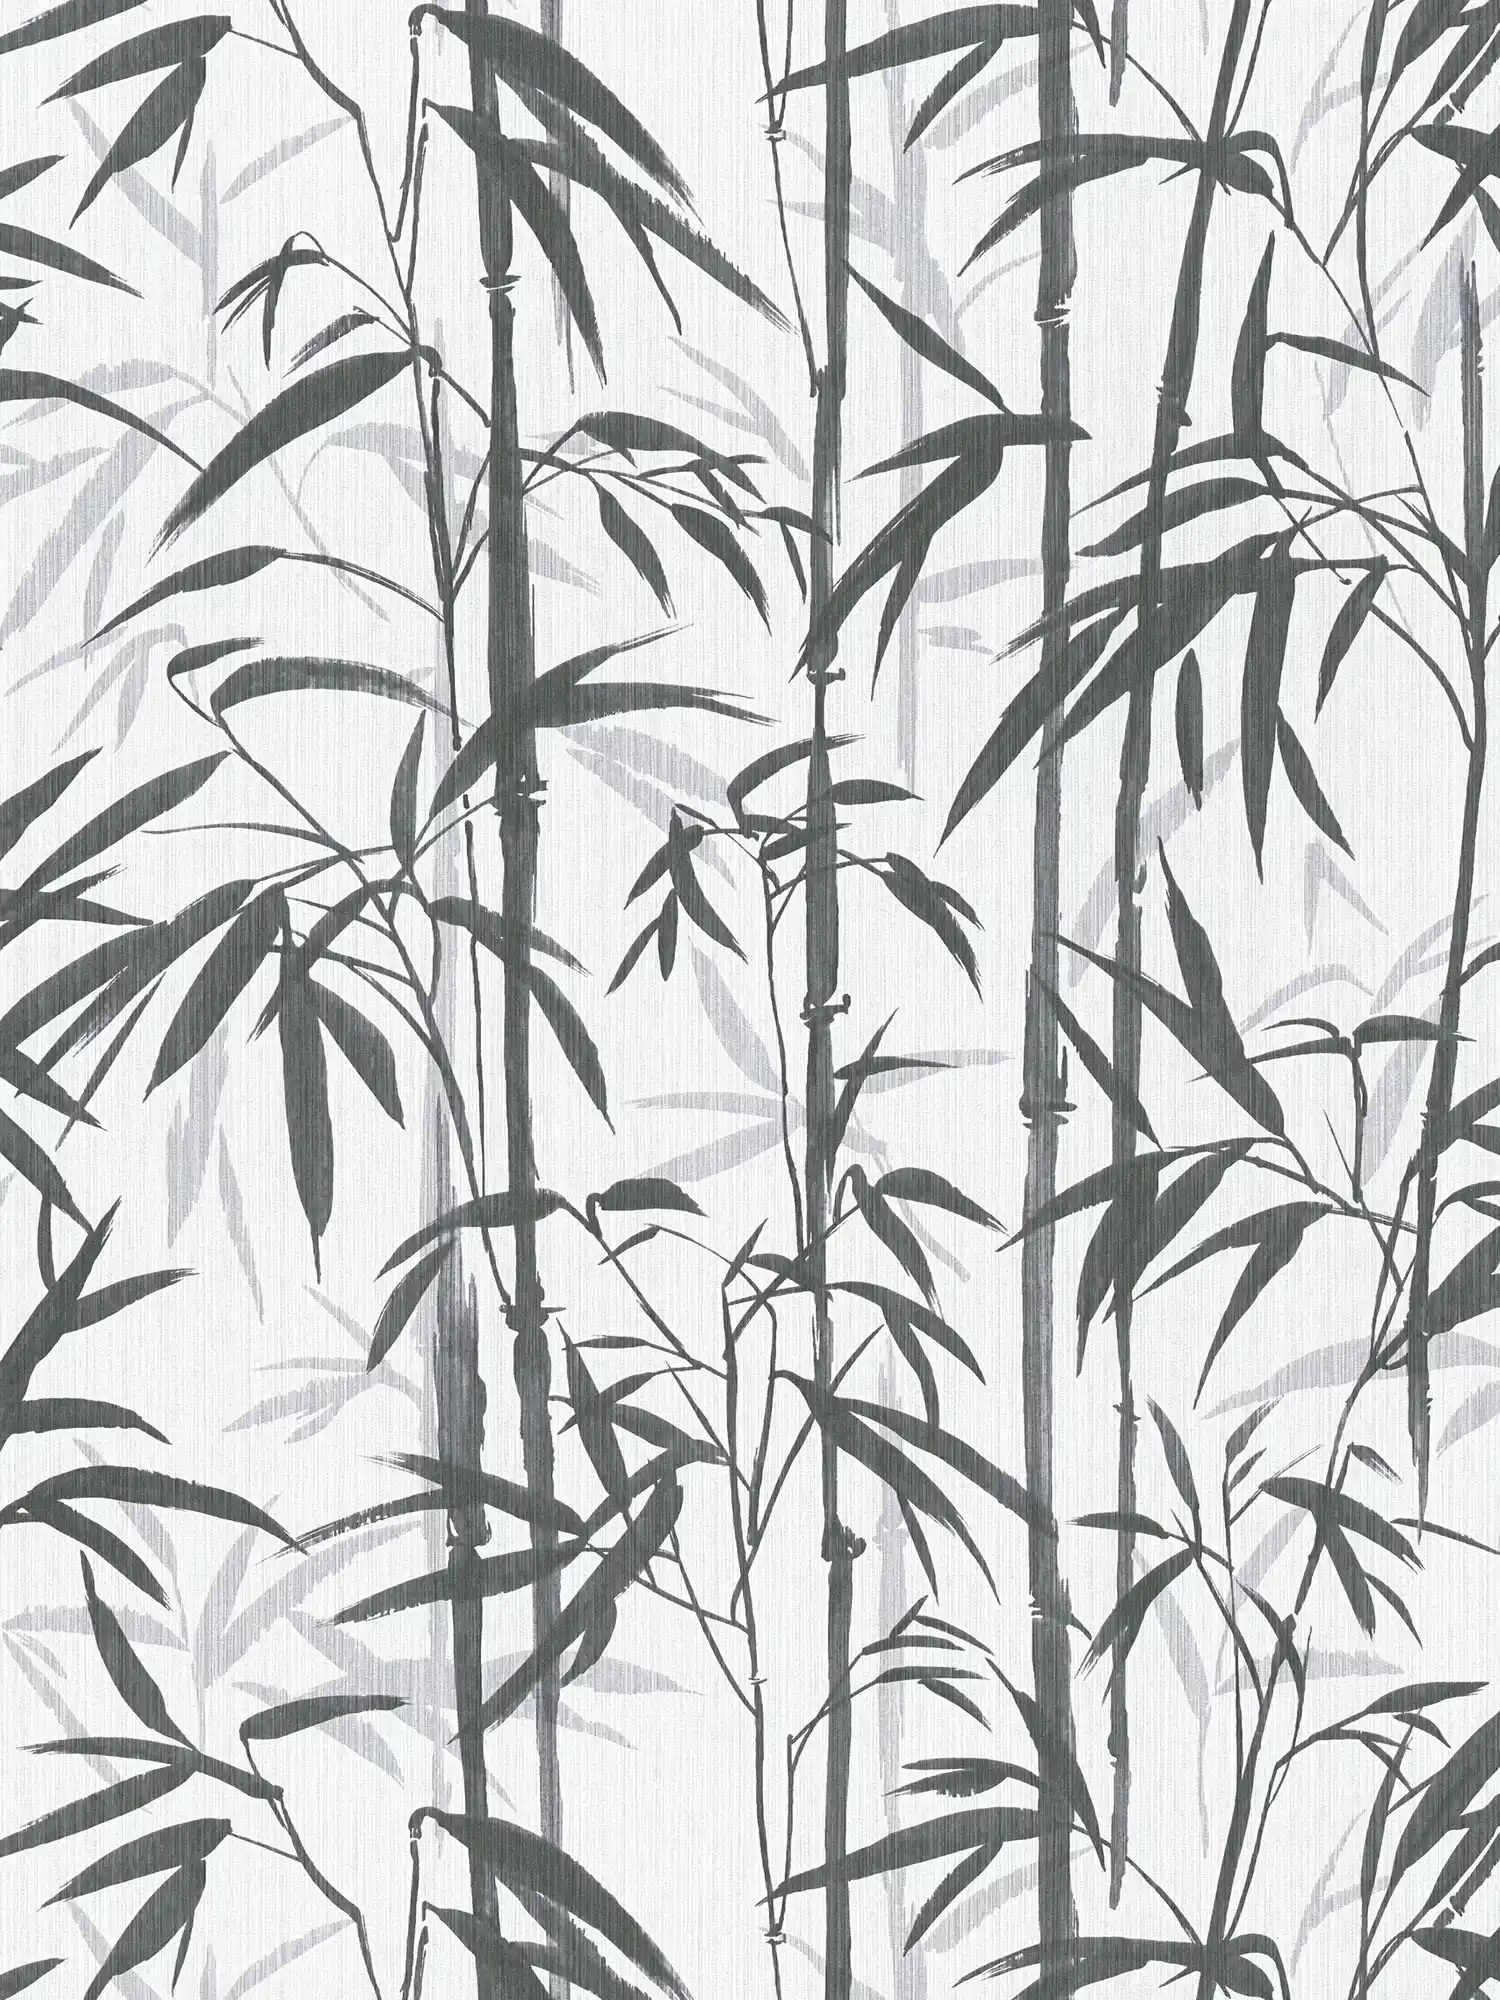 MICHALSKY vliesbehang bamboe design in zwart en wit
